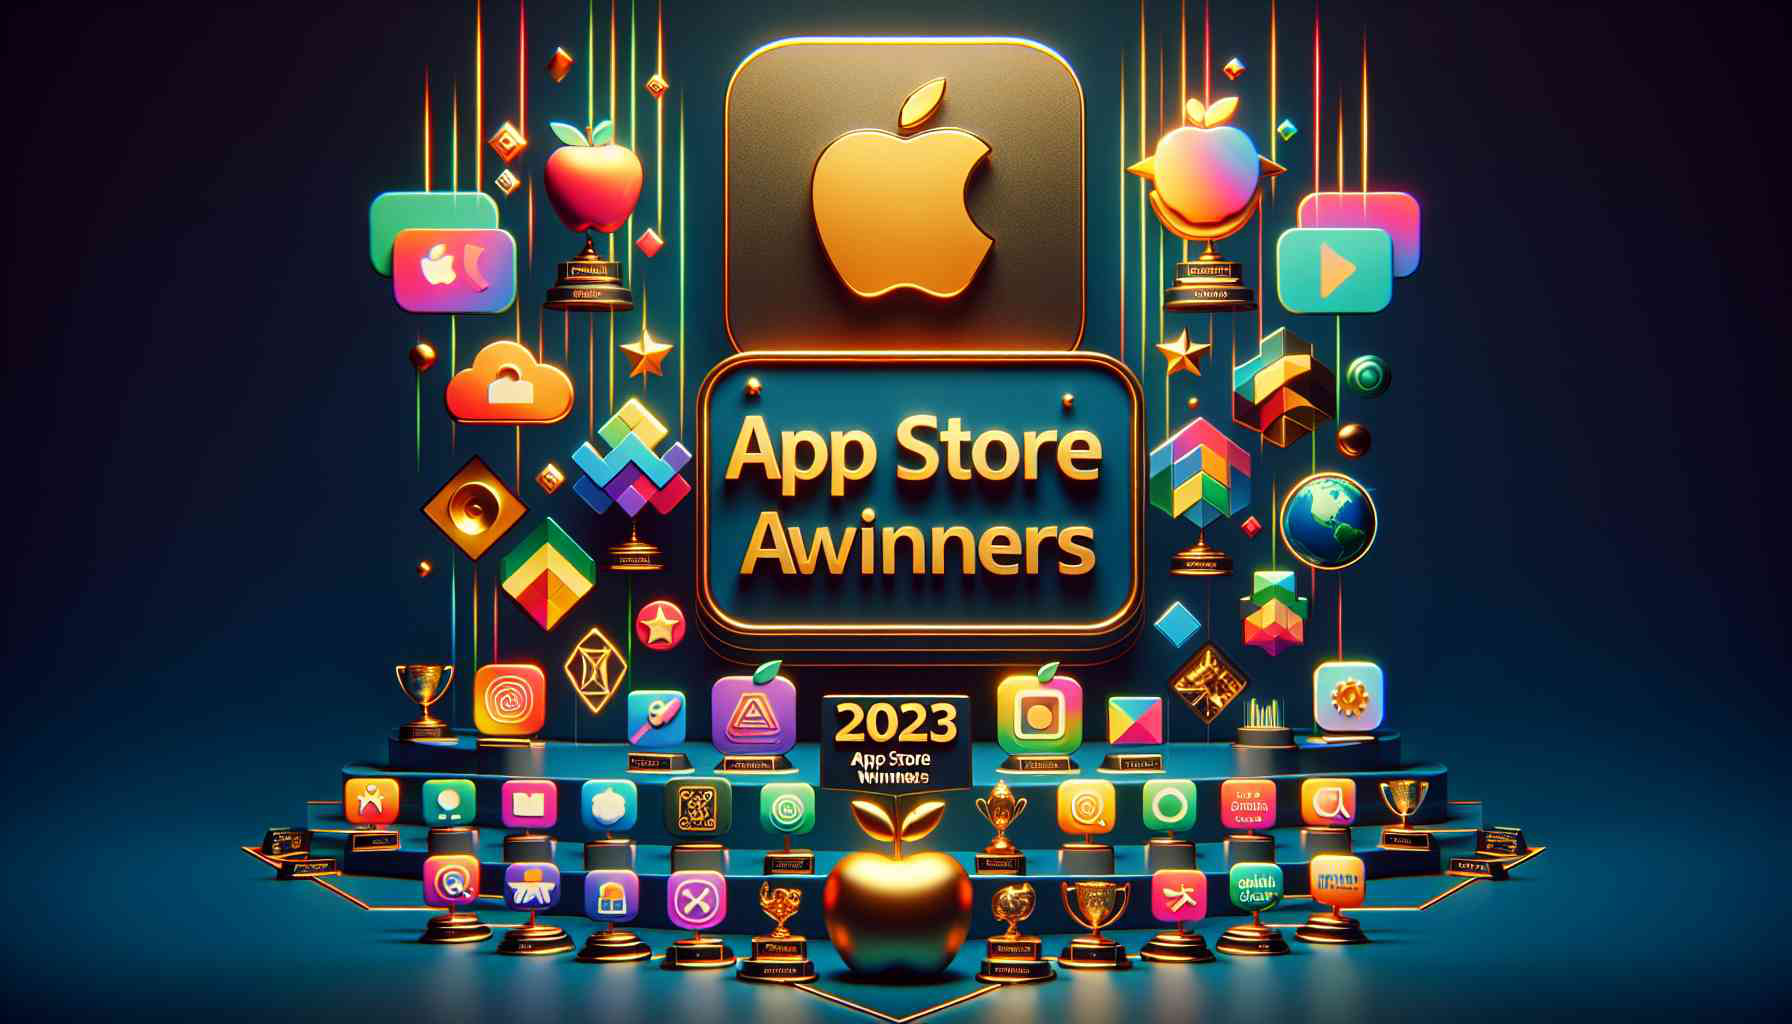 Apple vinh danh ứng dụng và trò chơi của năm 2023 trên App Store: TikTok tụt hạng, dẫn đầu là cái tên đang gây bão với giới trẻ Việt Nam- Ảnh 2.